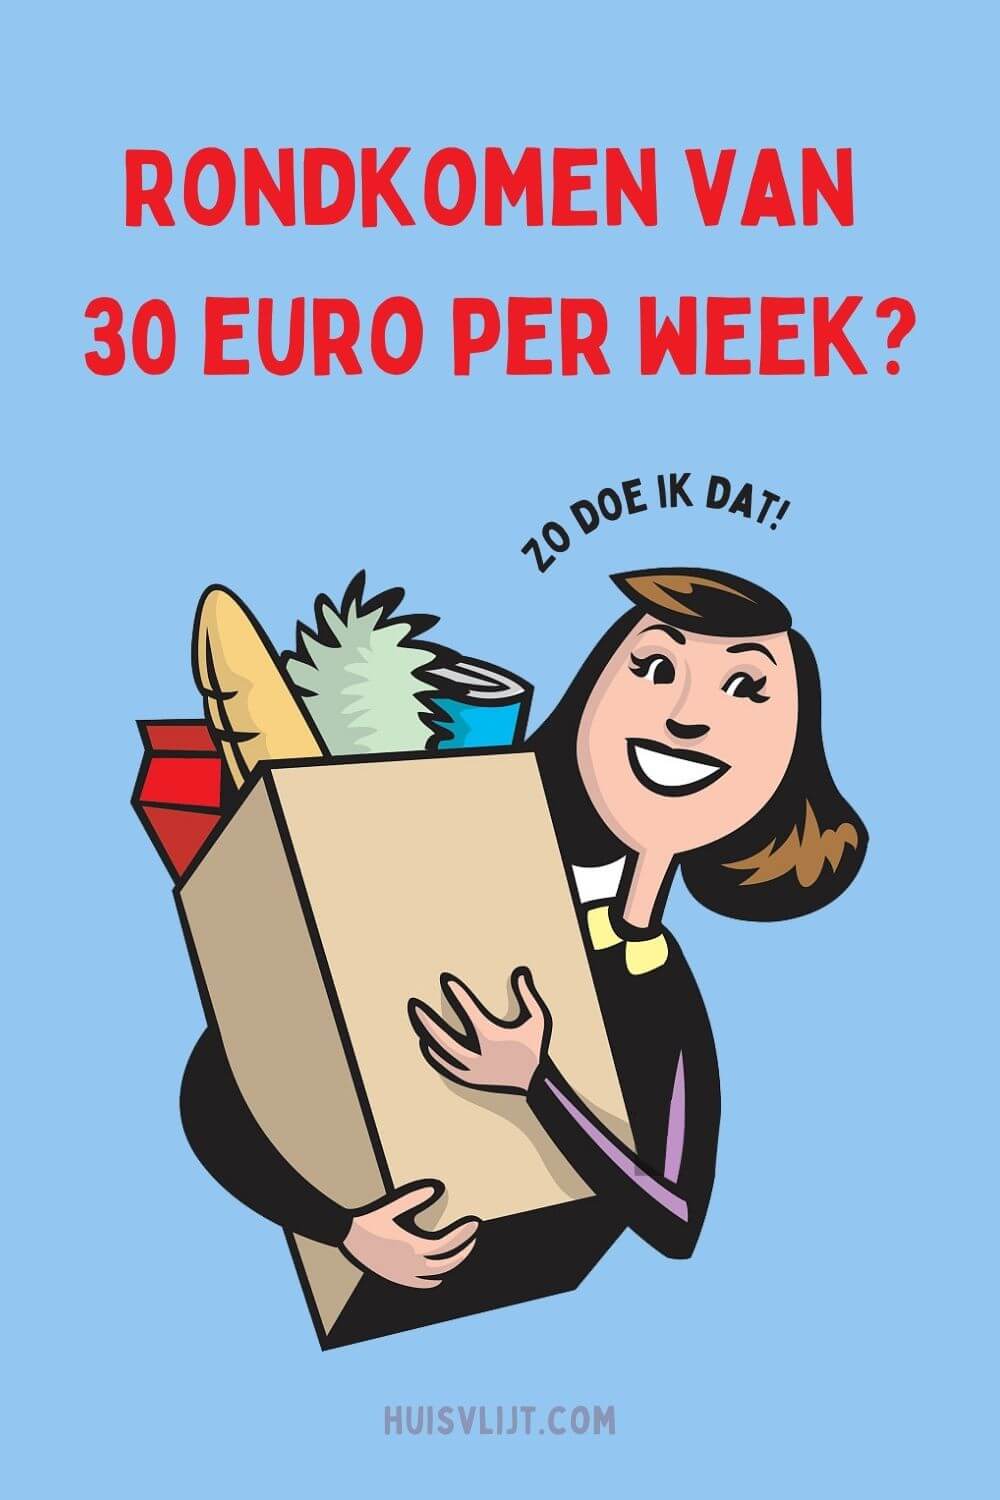 Rondkomen van 30 euro per week?